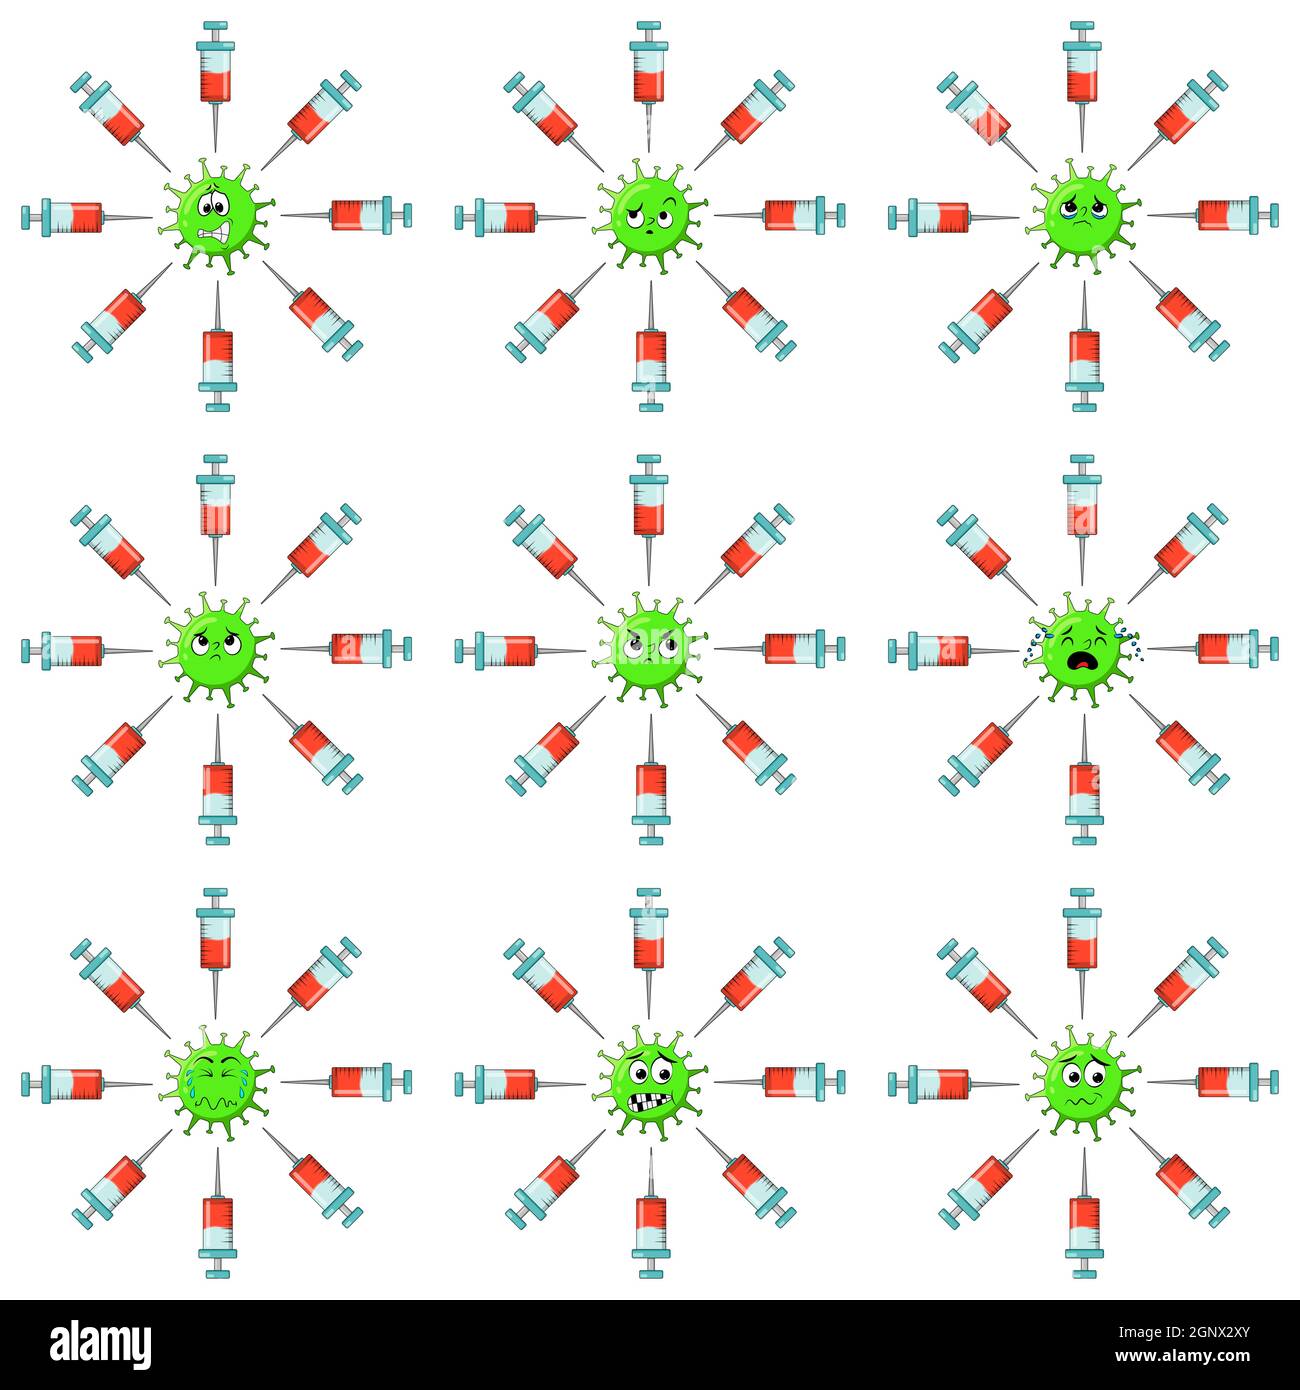 Covid 19-Impfstoffset mit Coronavirus-Charakter. Große Sammlung von Impfsymbolen. Konzept der Virus Angst und Angst vor Injektion. Vektordarstellung auf weißem Hintergrund isoliert. Stock Vektor